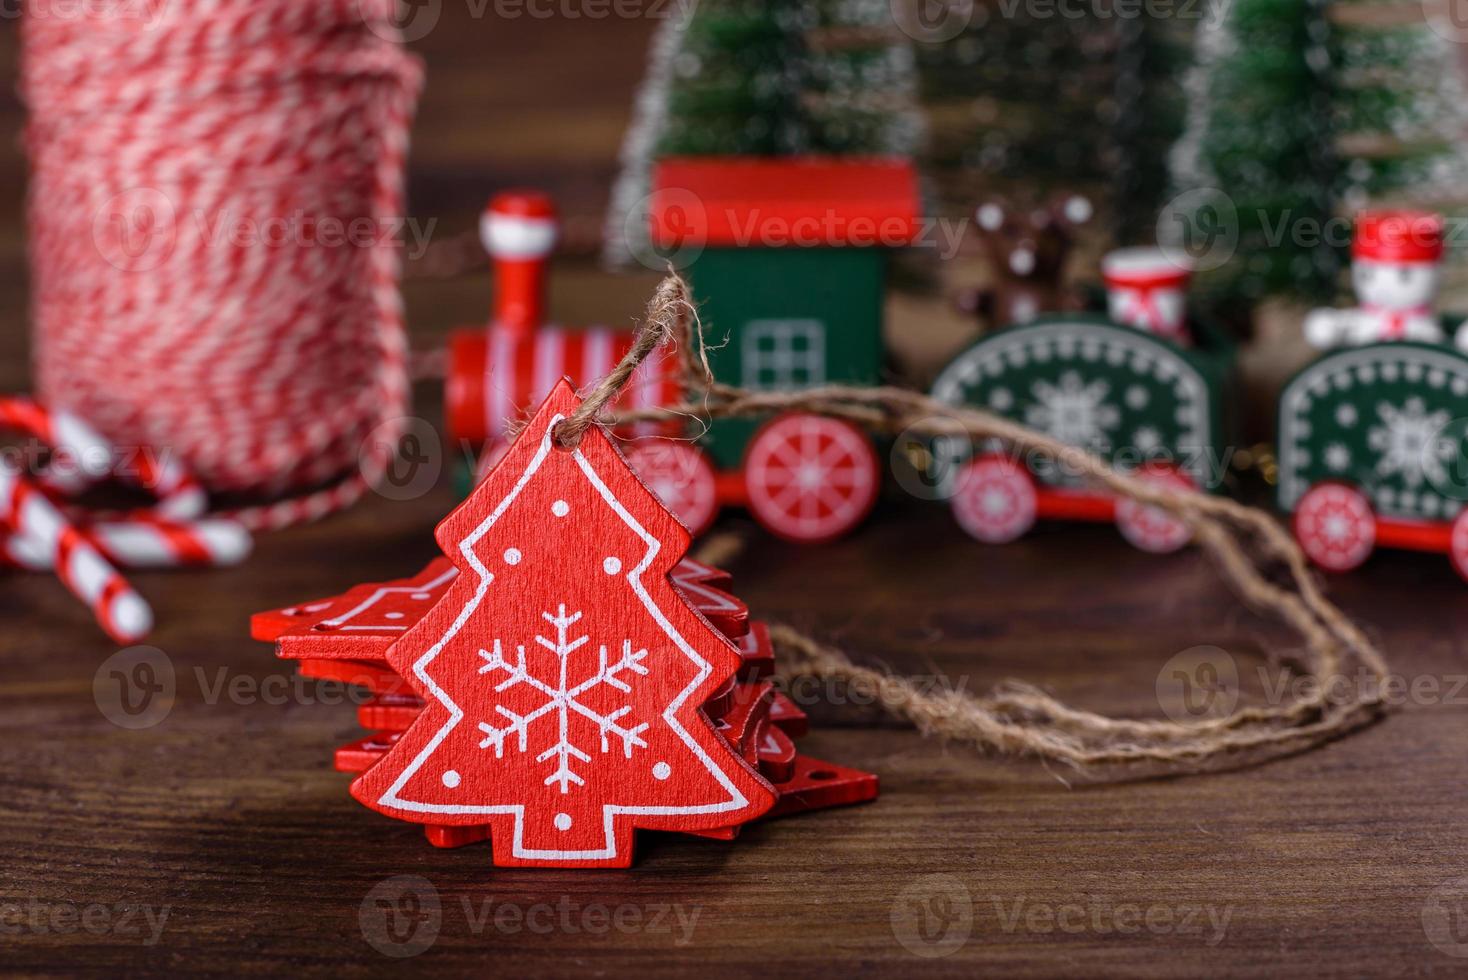 Weihnachtselemente von Dekorationen zum Dekorieren des Neujahrsbaums foto